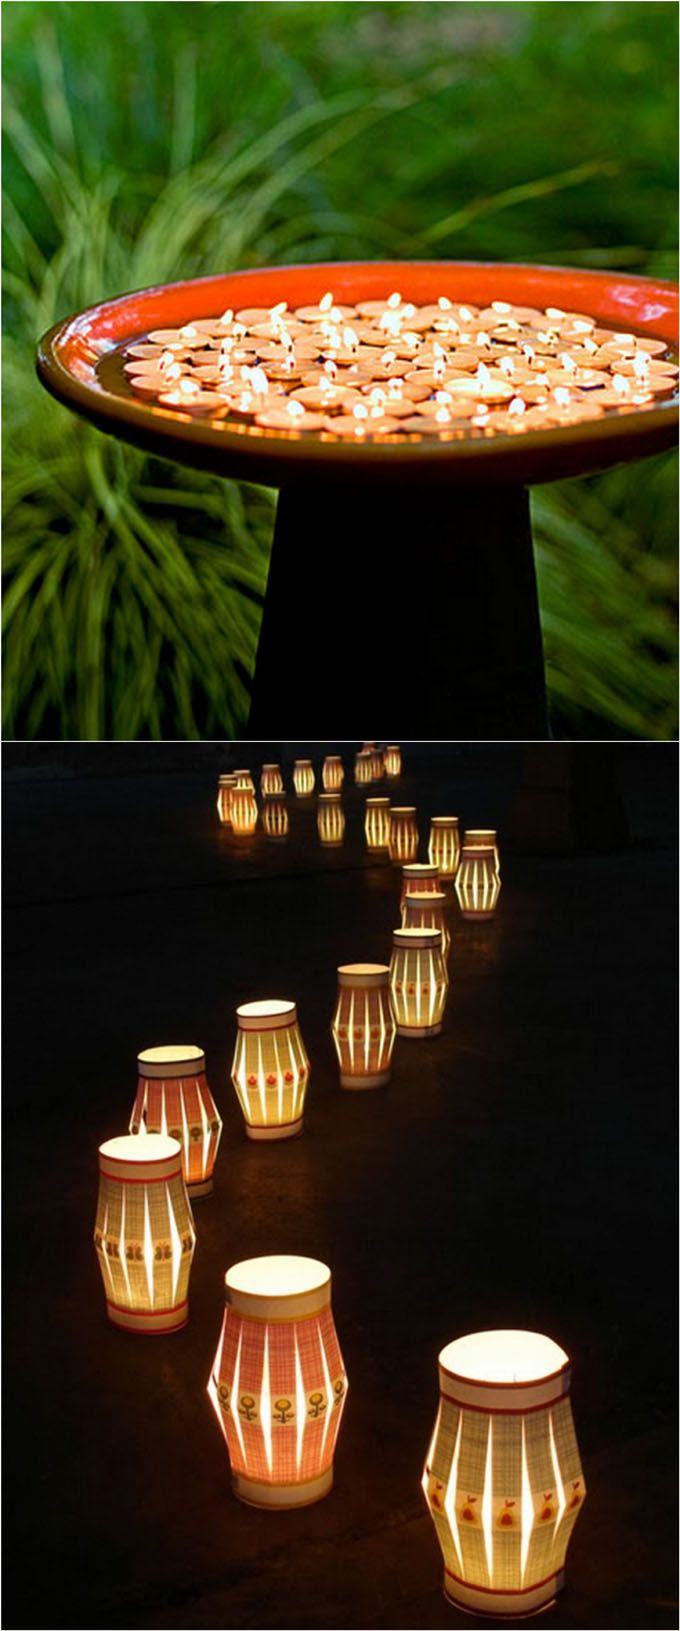 DIY Mason Jar Outdoor Lights
 28 Stunning & Easy DIY Outdoor Lights